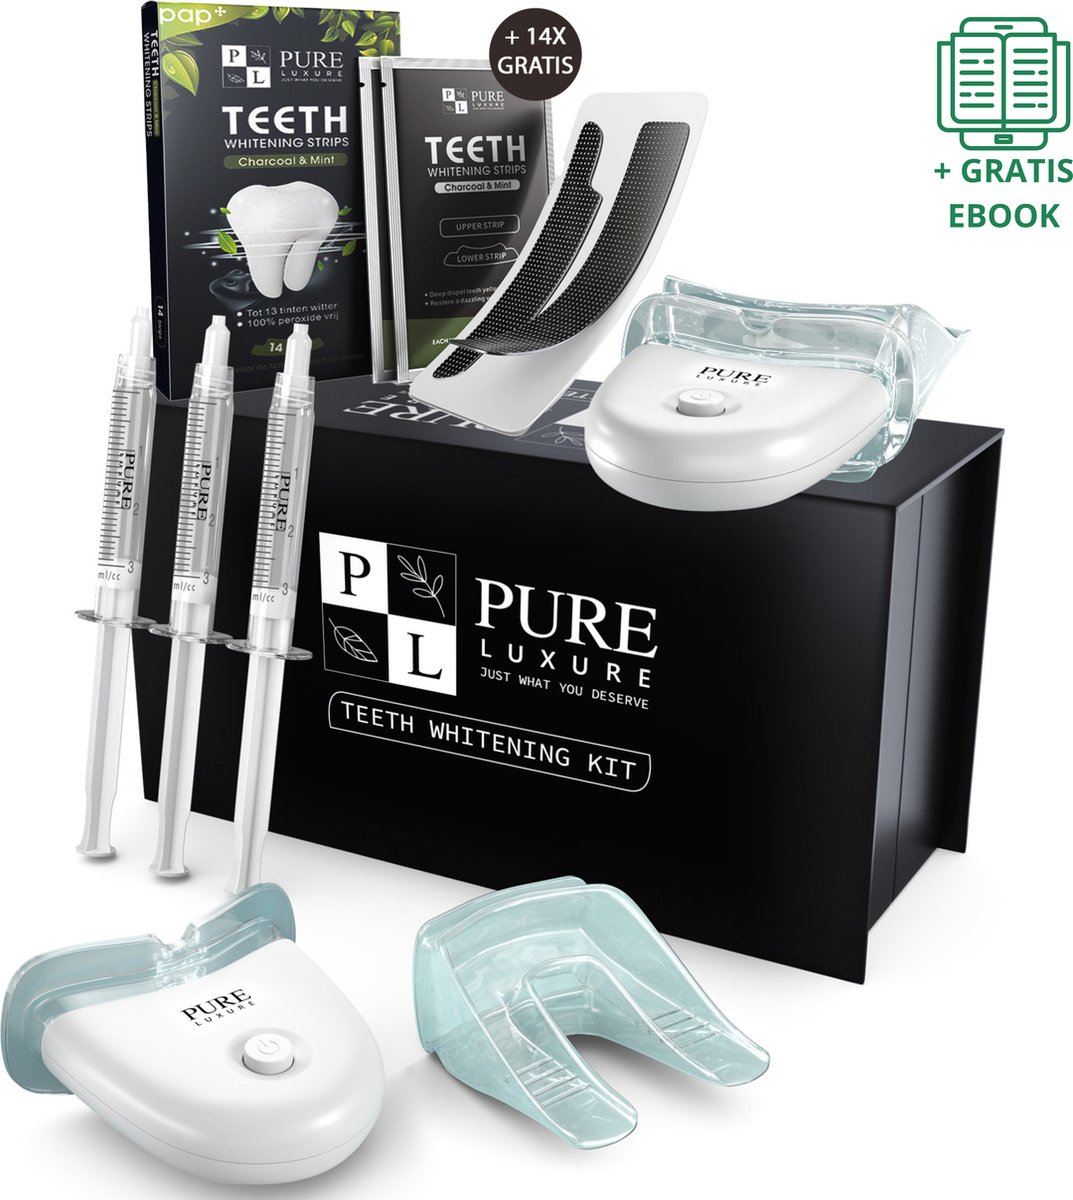 Pure Luxure Teeth whitening kit zonder peroxide met teeth whitening strips - tanden bleken - tandenbleekset - tandenblekers - witte tandenbleekstrips - met handleiding en ebook